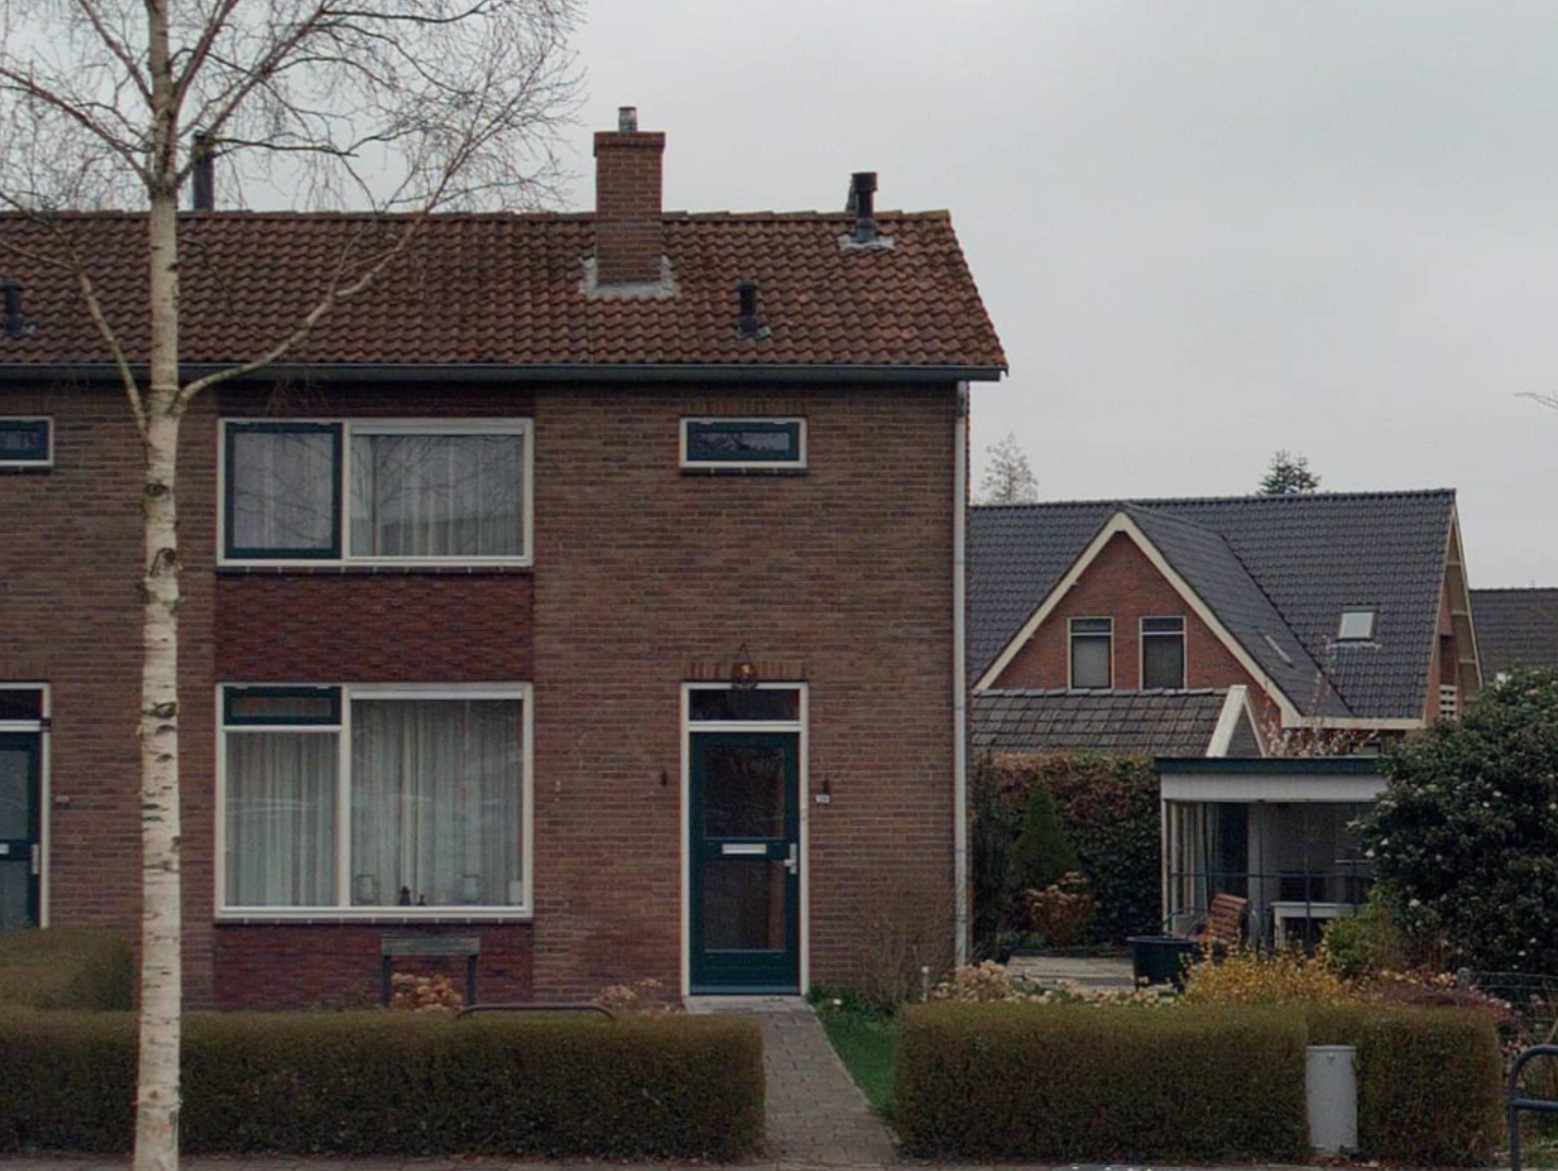 Vaart Noordzijde 120, 8426 AX Appelscha, Nederland